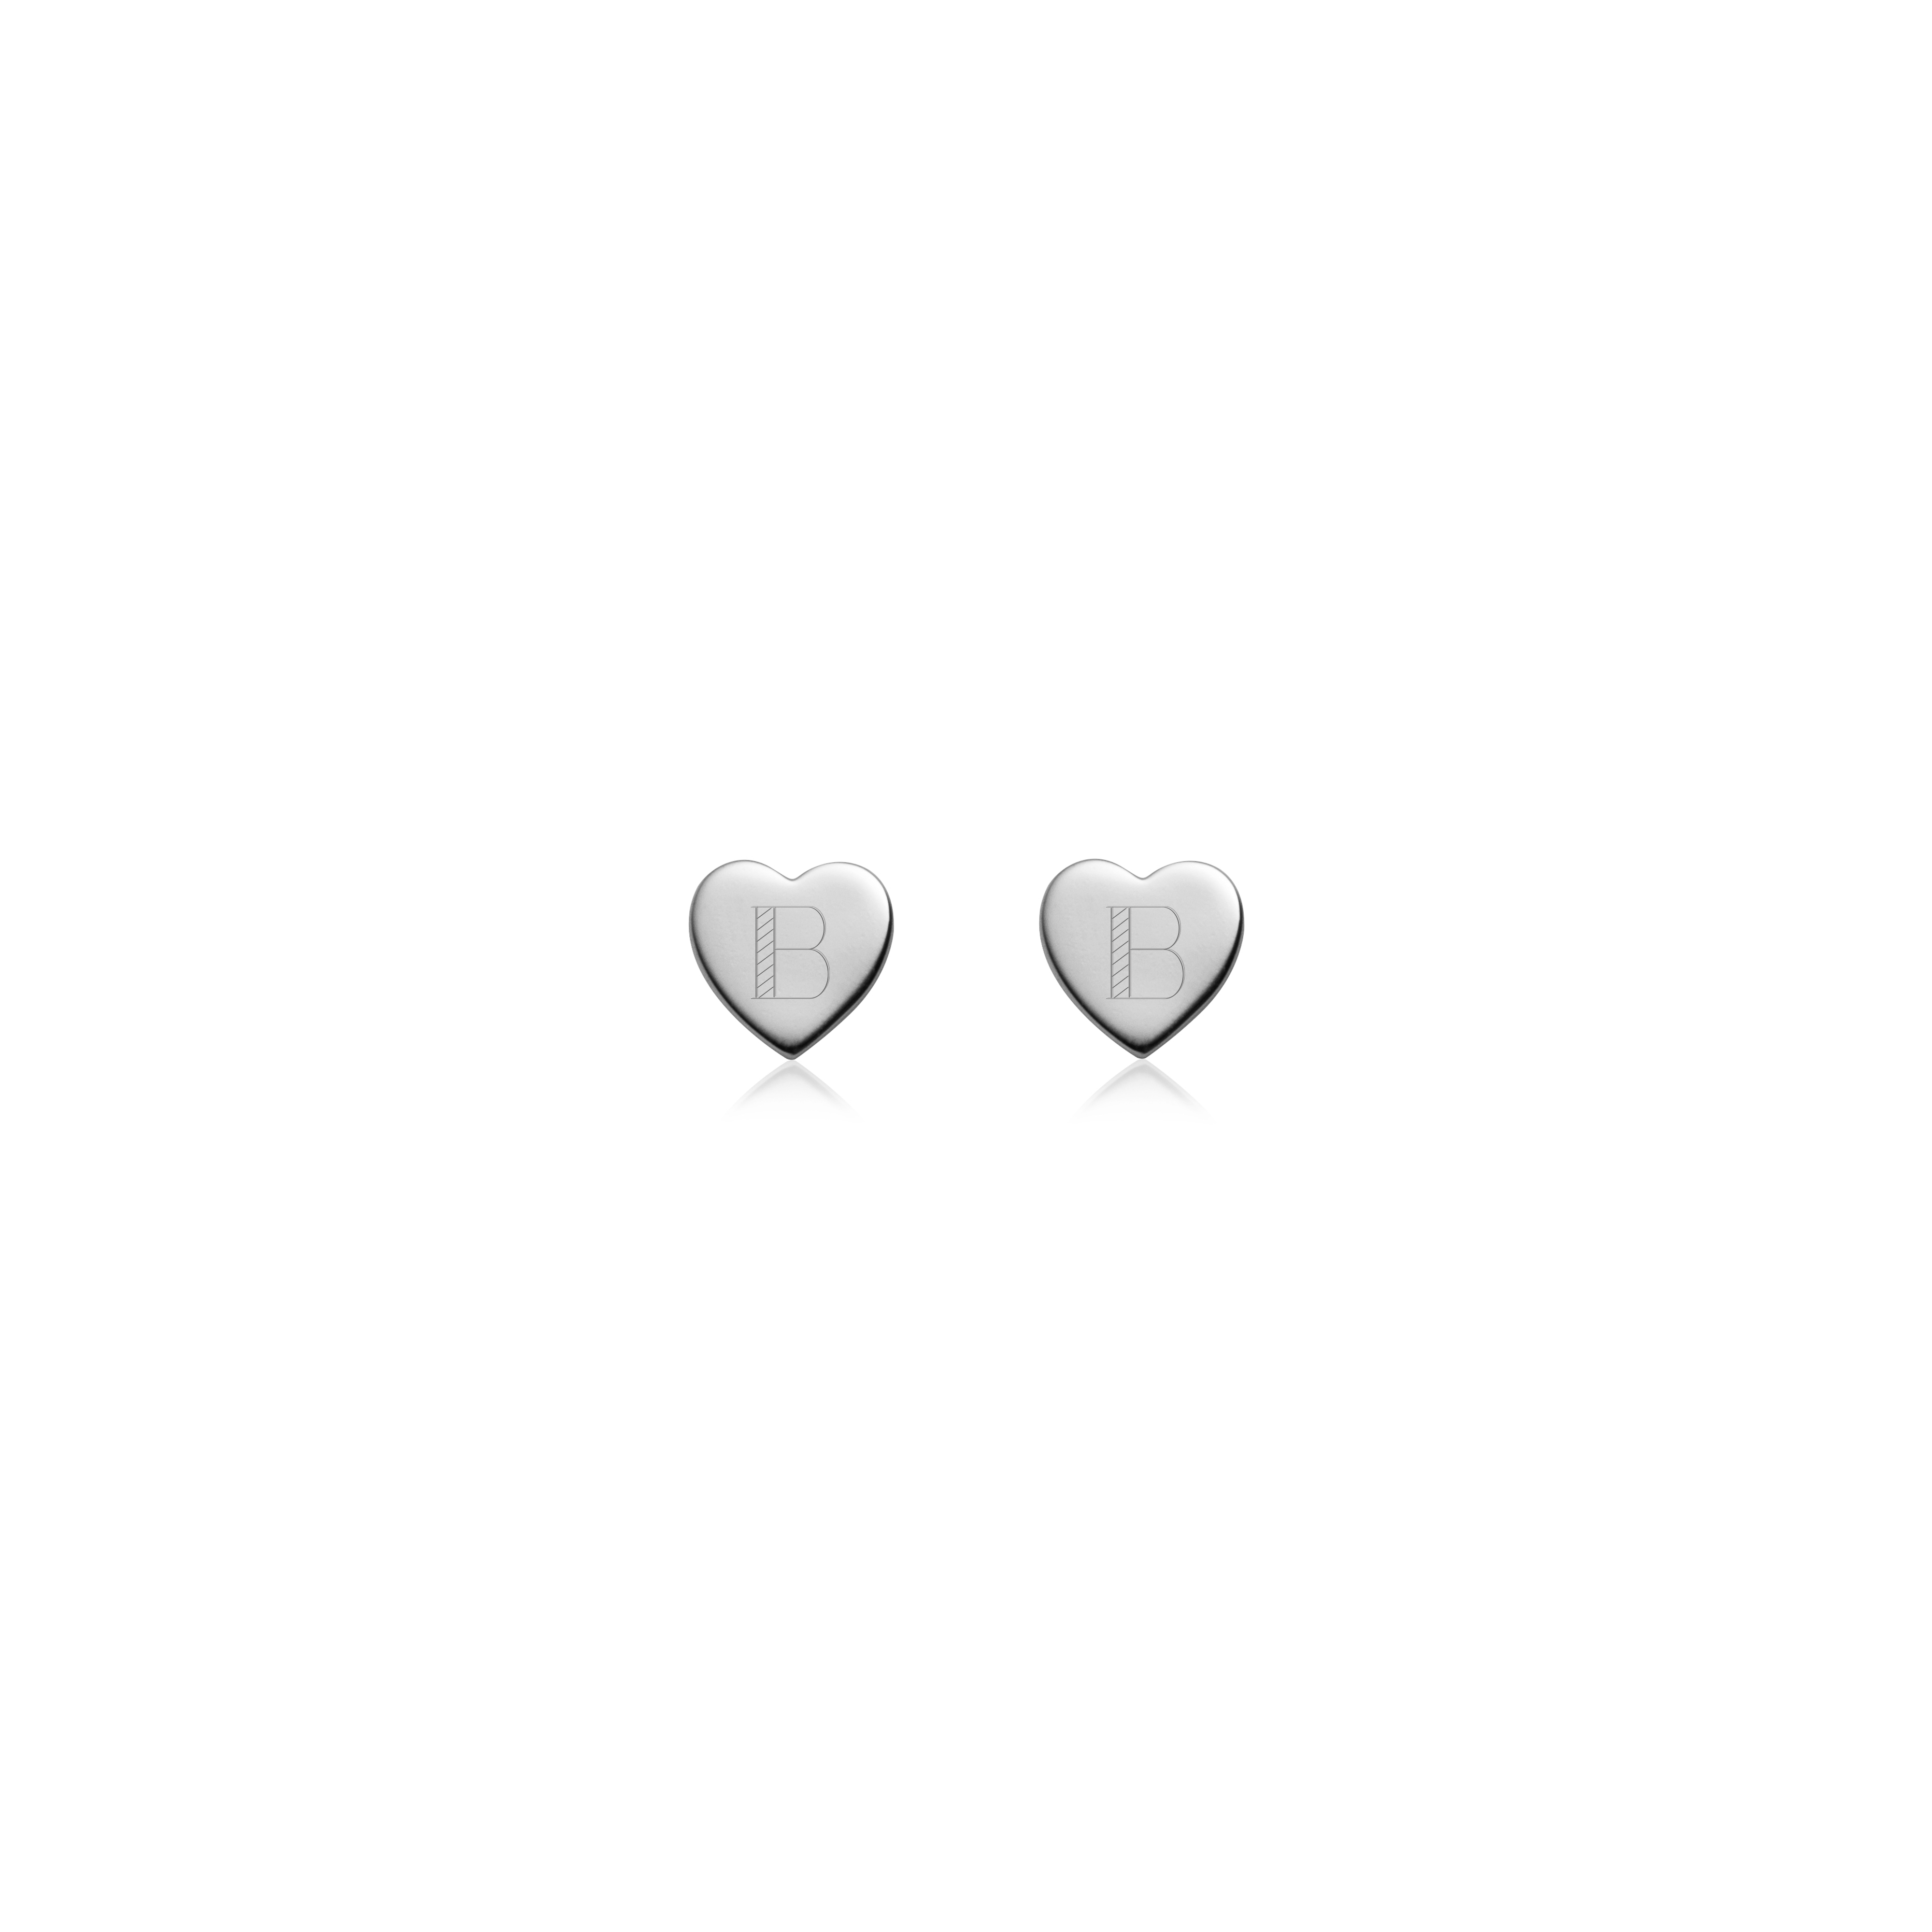 Luxe Heart Stud Earrings (Silver)